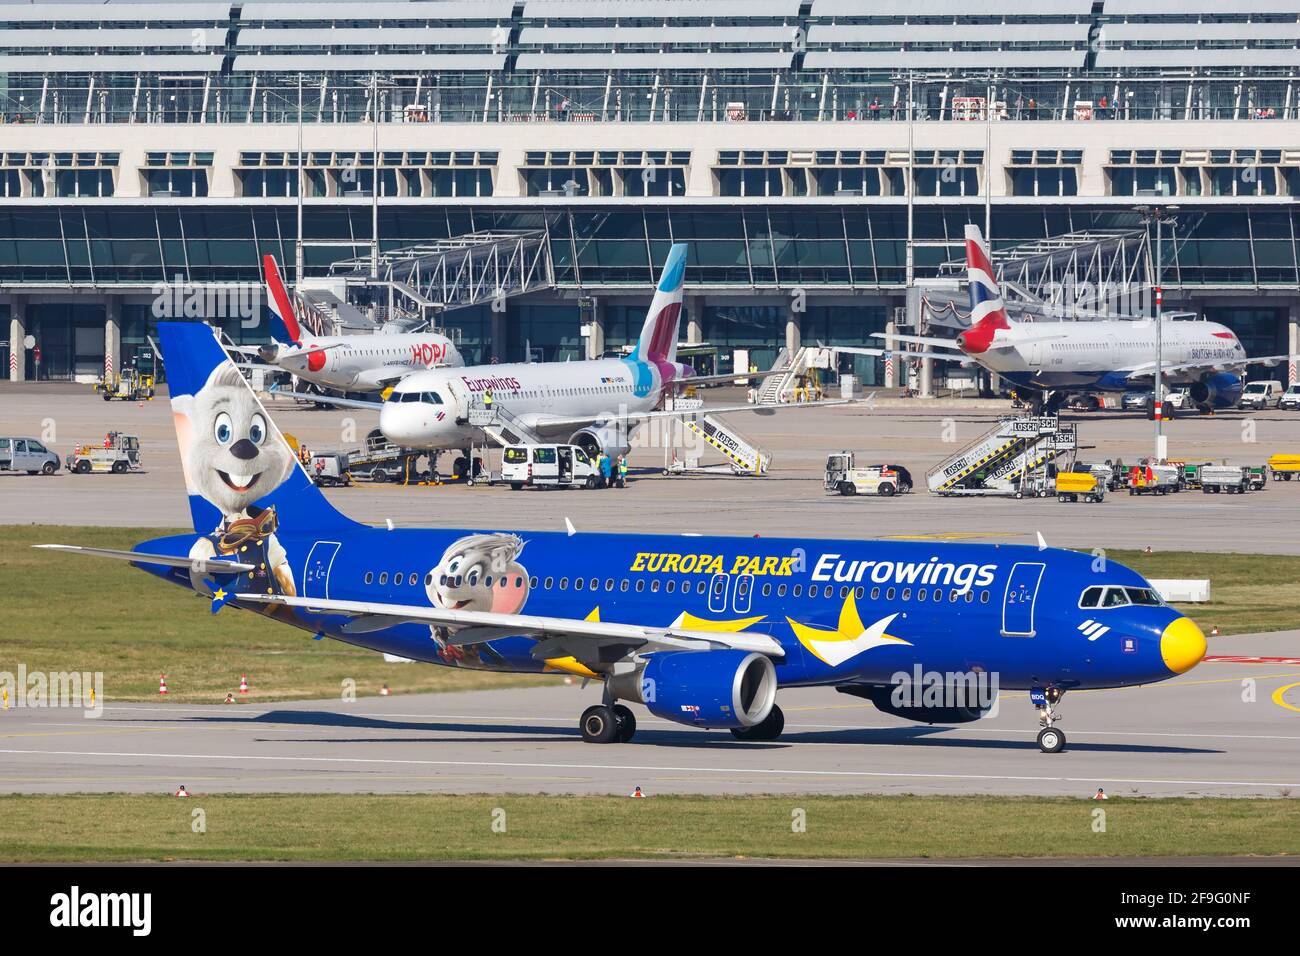 Stoccarda, Germania - 13 ottobre 2018: Eurowings Airbus A320 aereo nell'Europa Park livrea all'aeroporto di Stoccarda (Str) in Germania. Airbus è un EUR Foto Stock